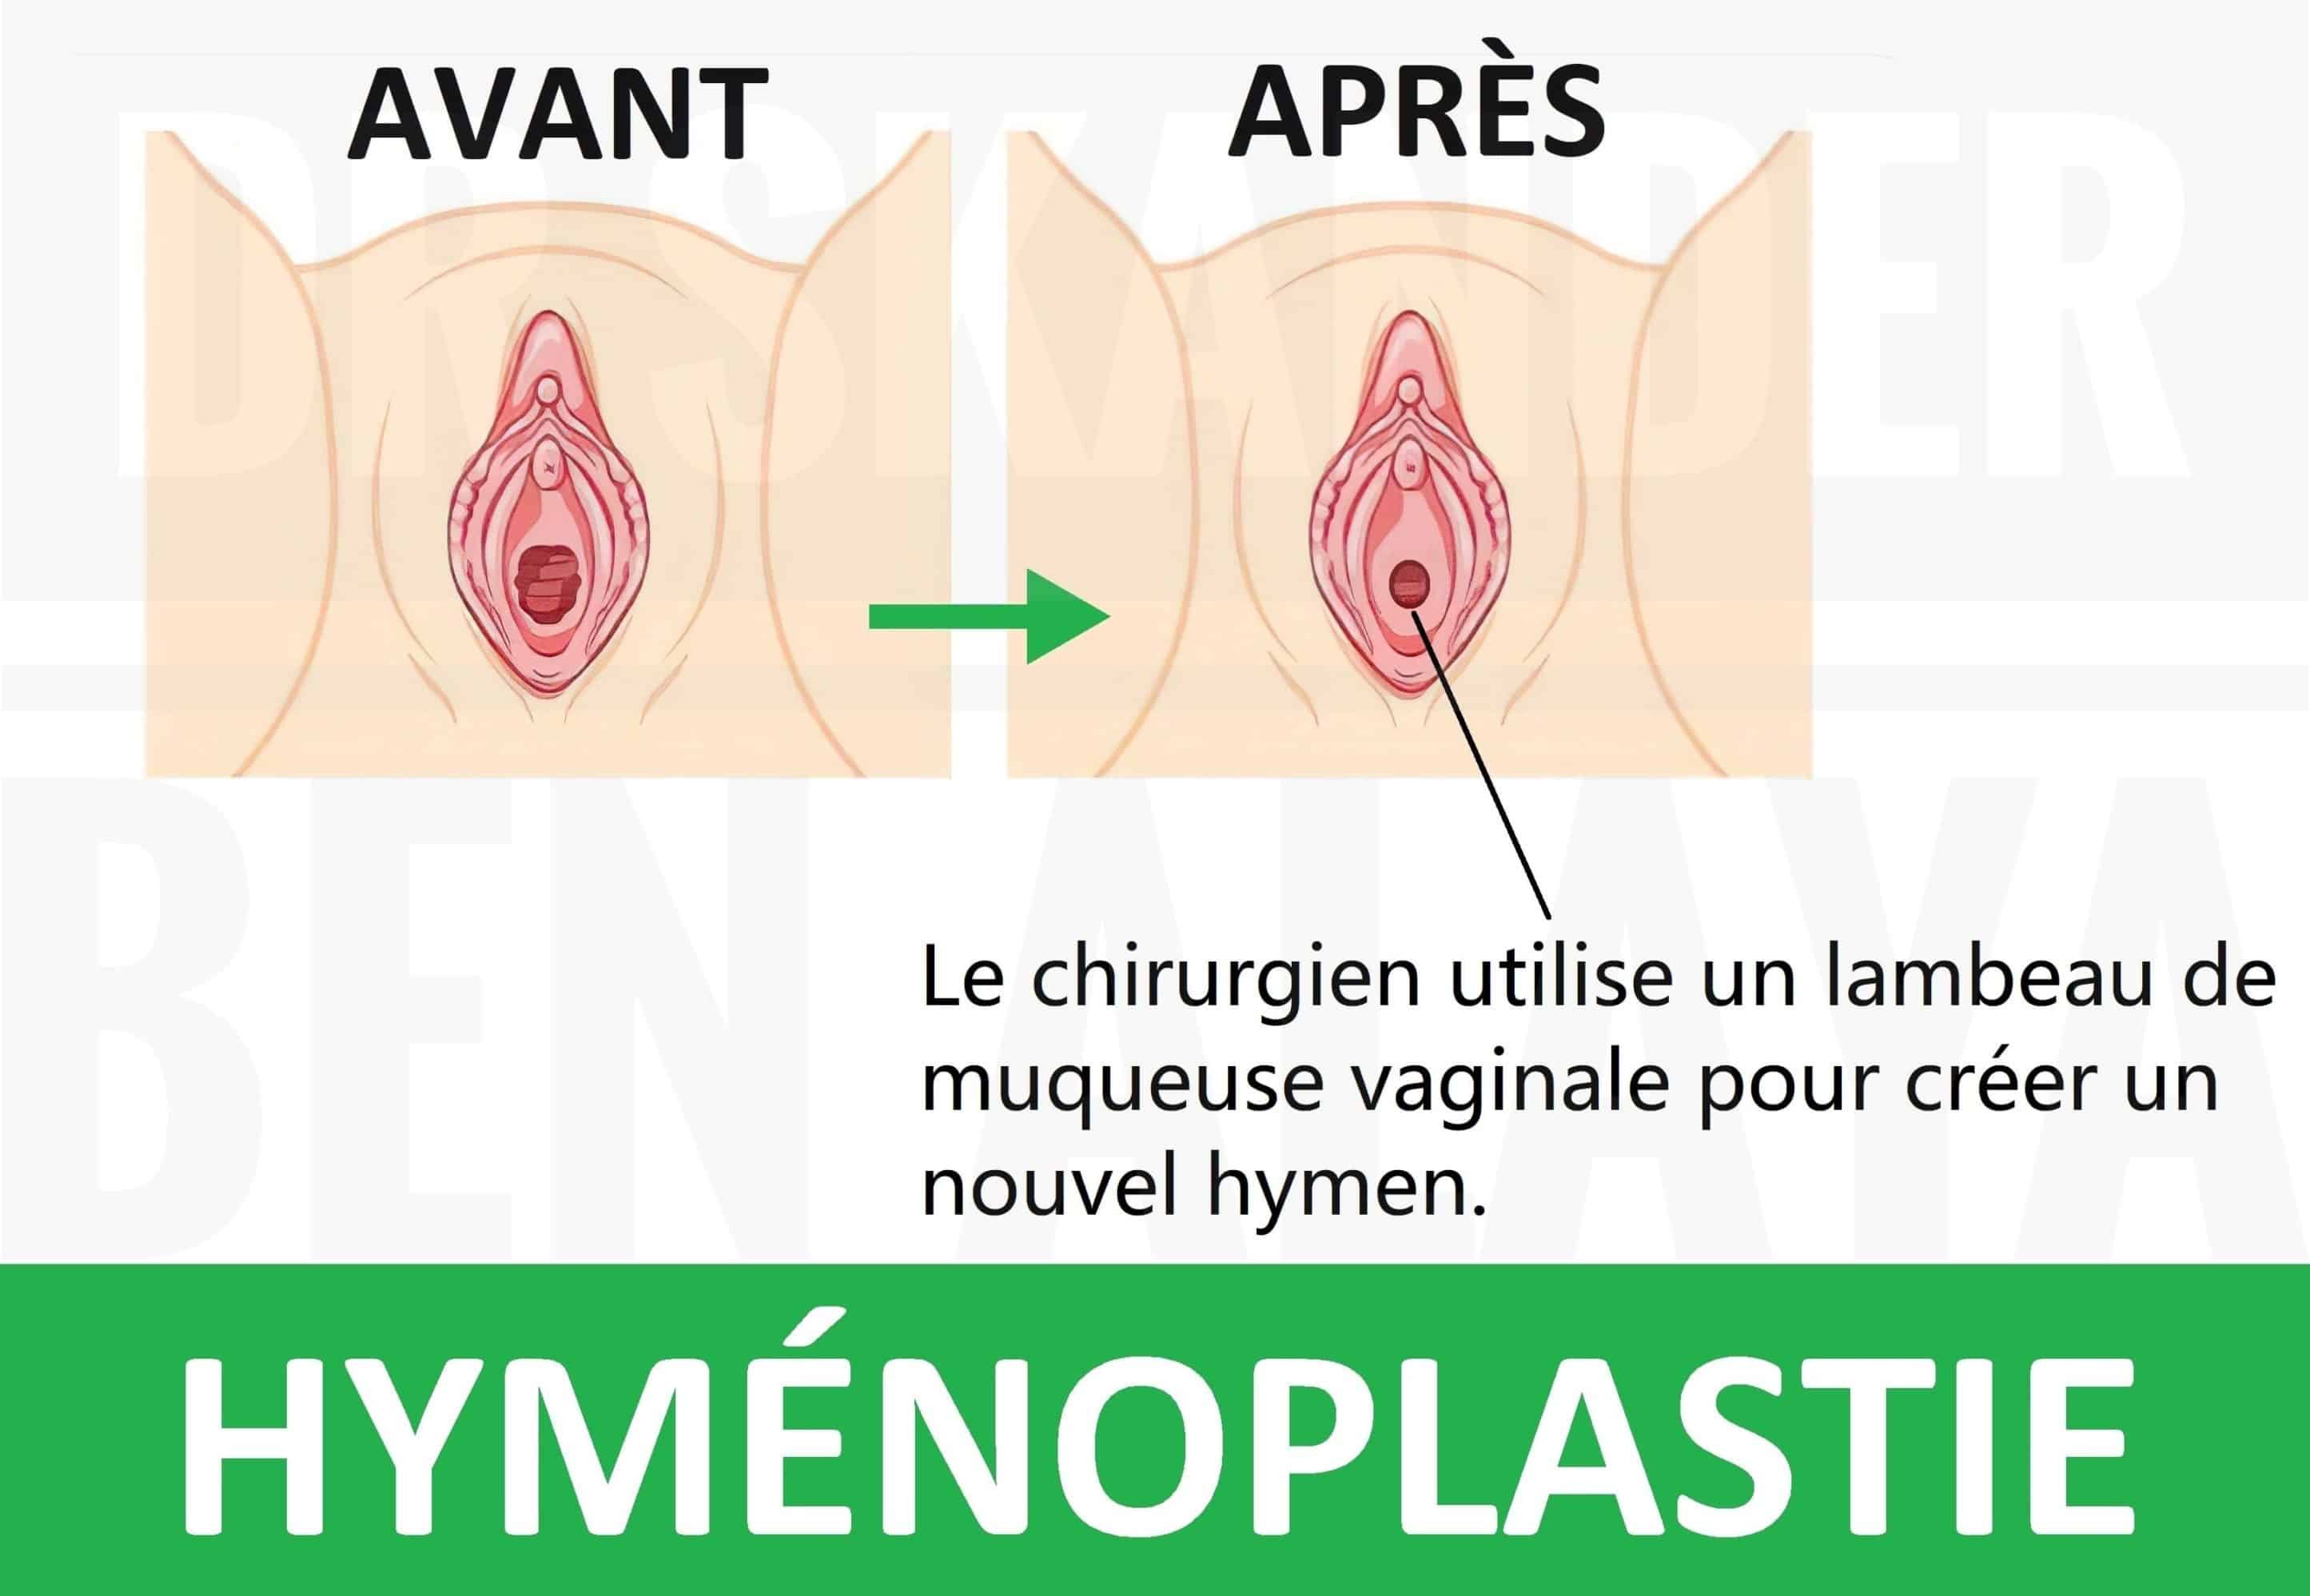 Une hyménoplastie est une opération qui vise la reconstruction définitive de l'hymen déchiré.